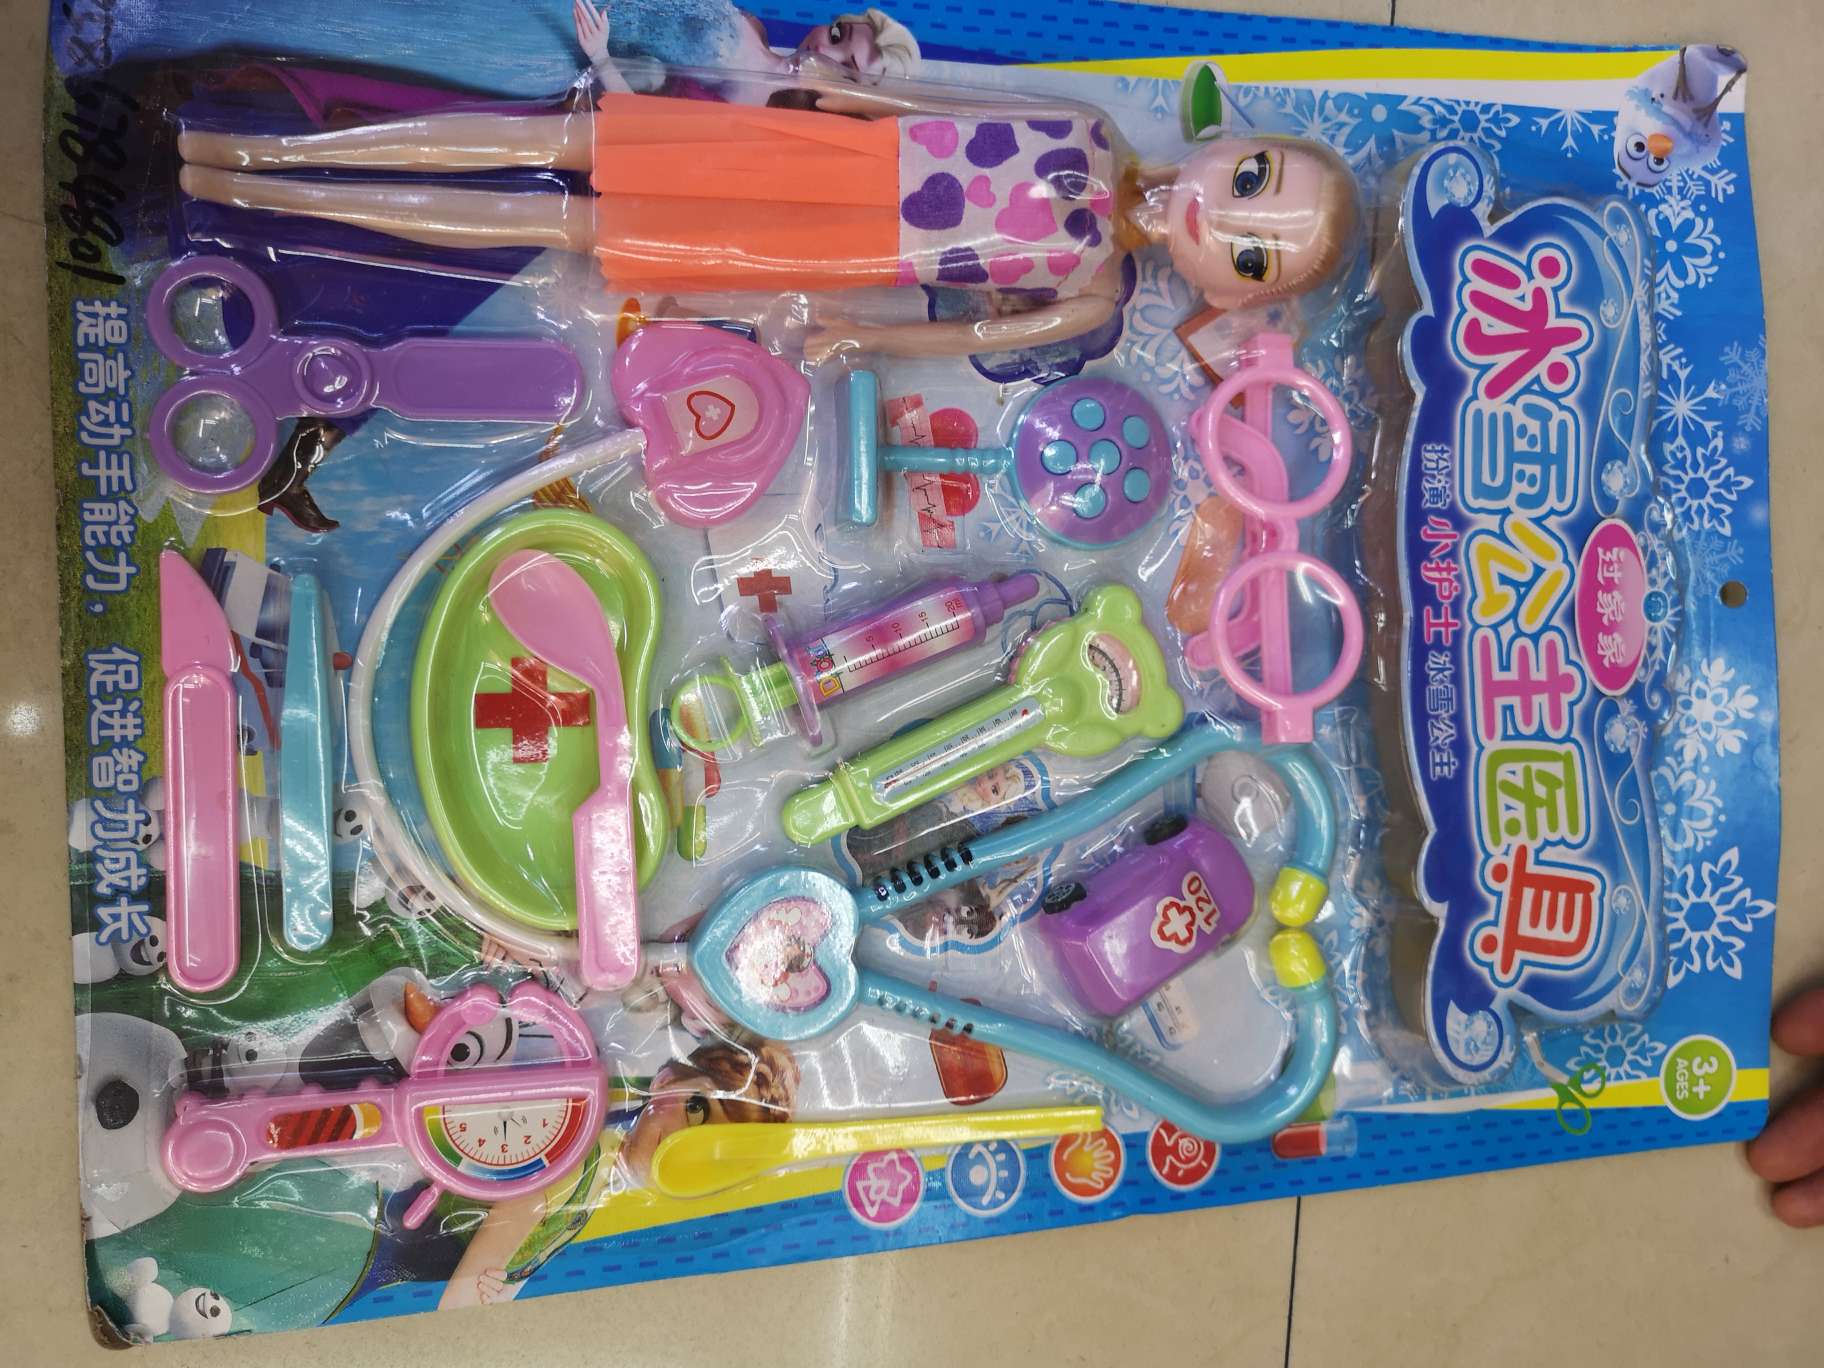 杨燕春玩具商行冰雪公主医生工具玩具过家家玩具01